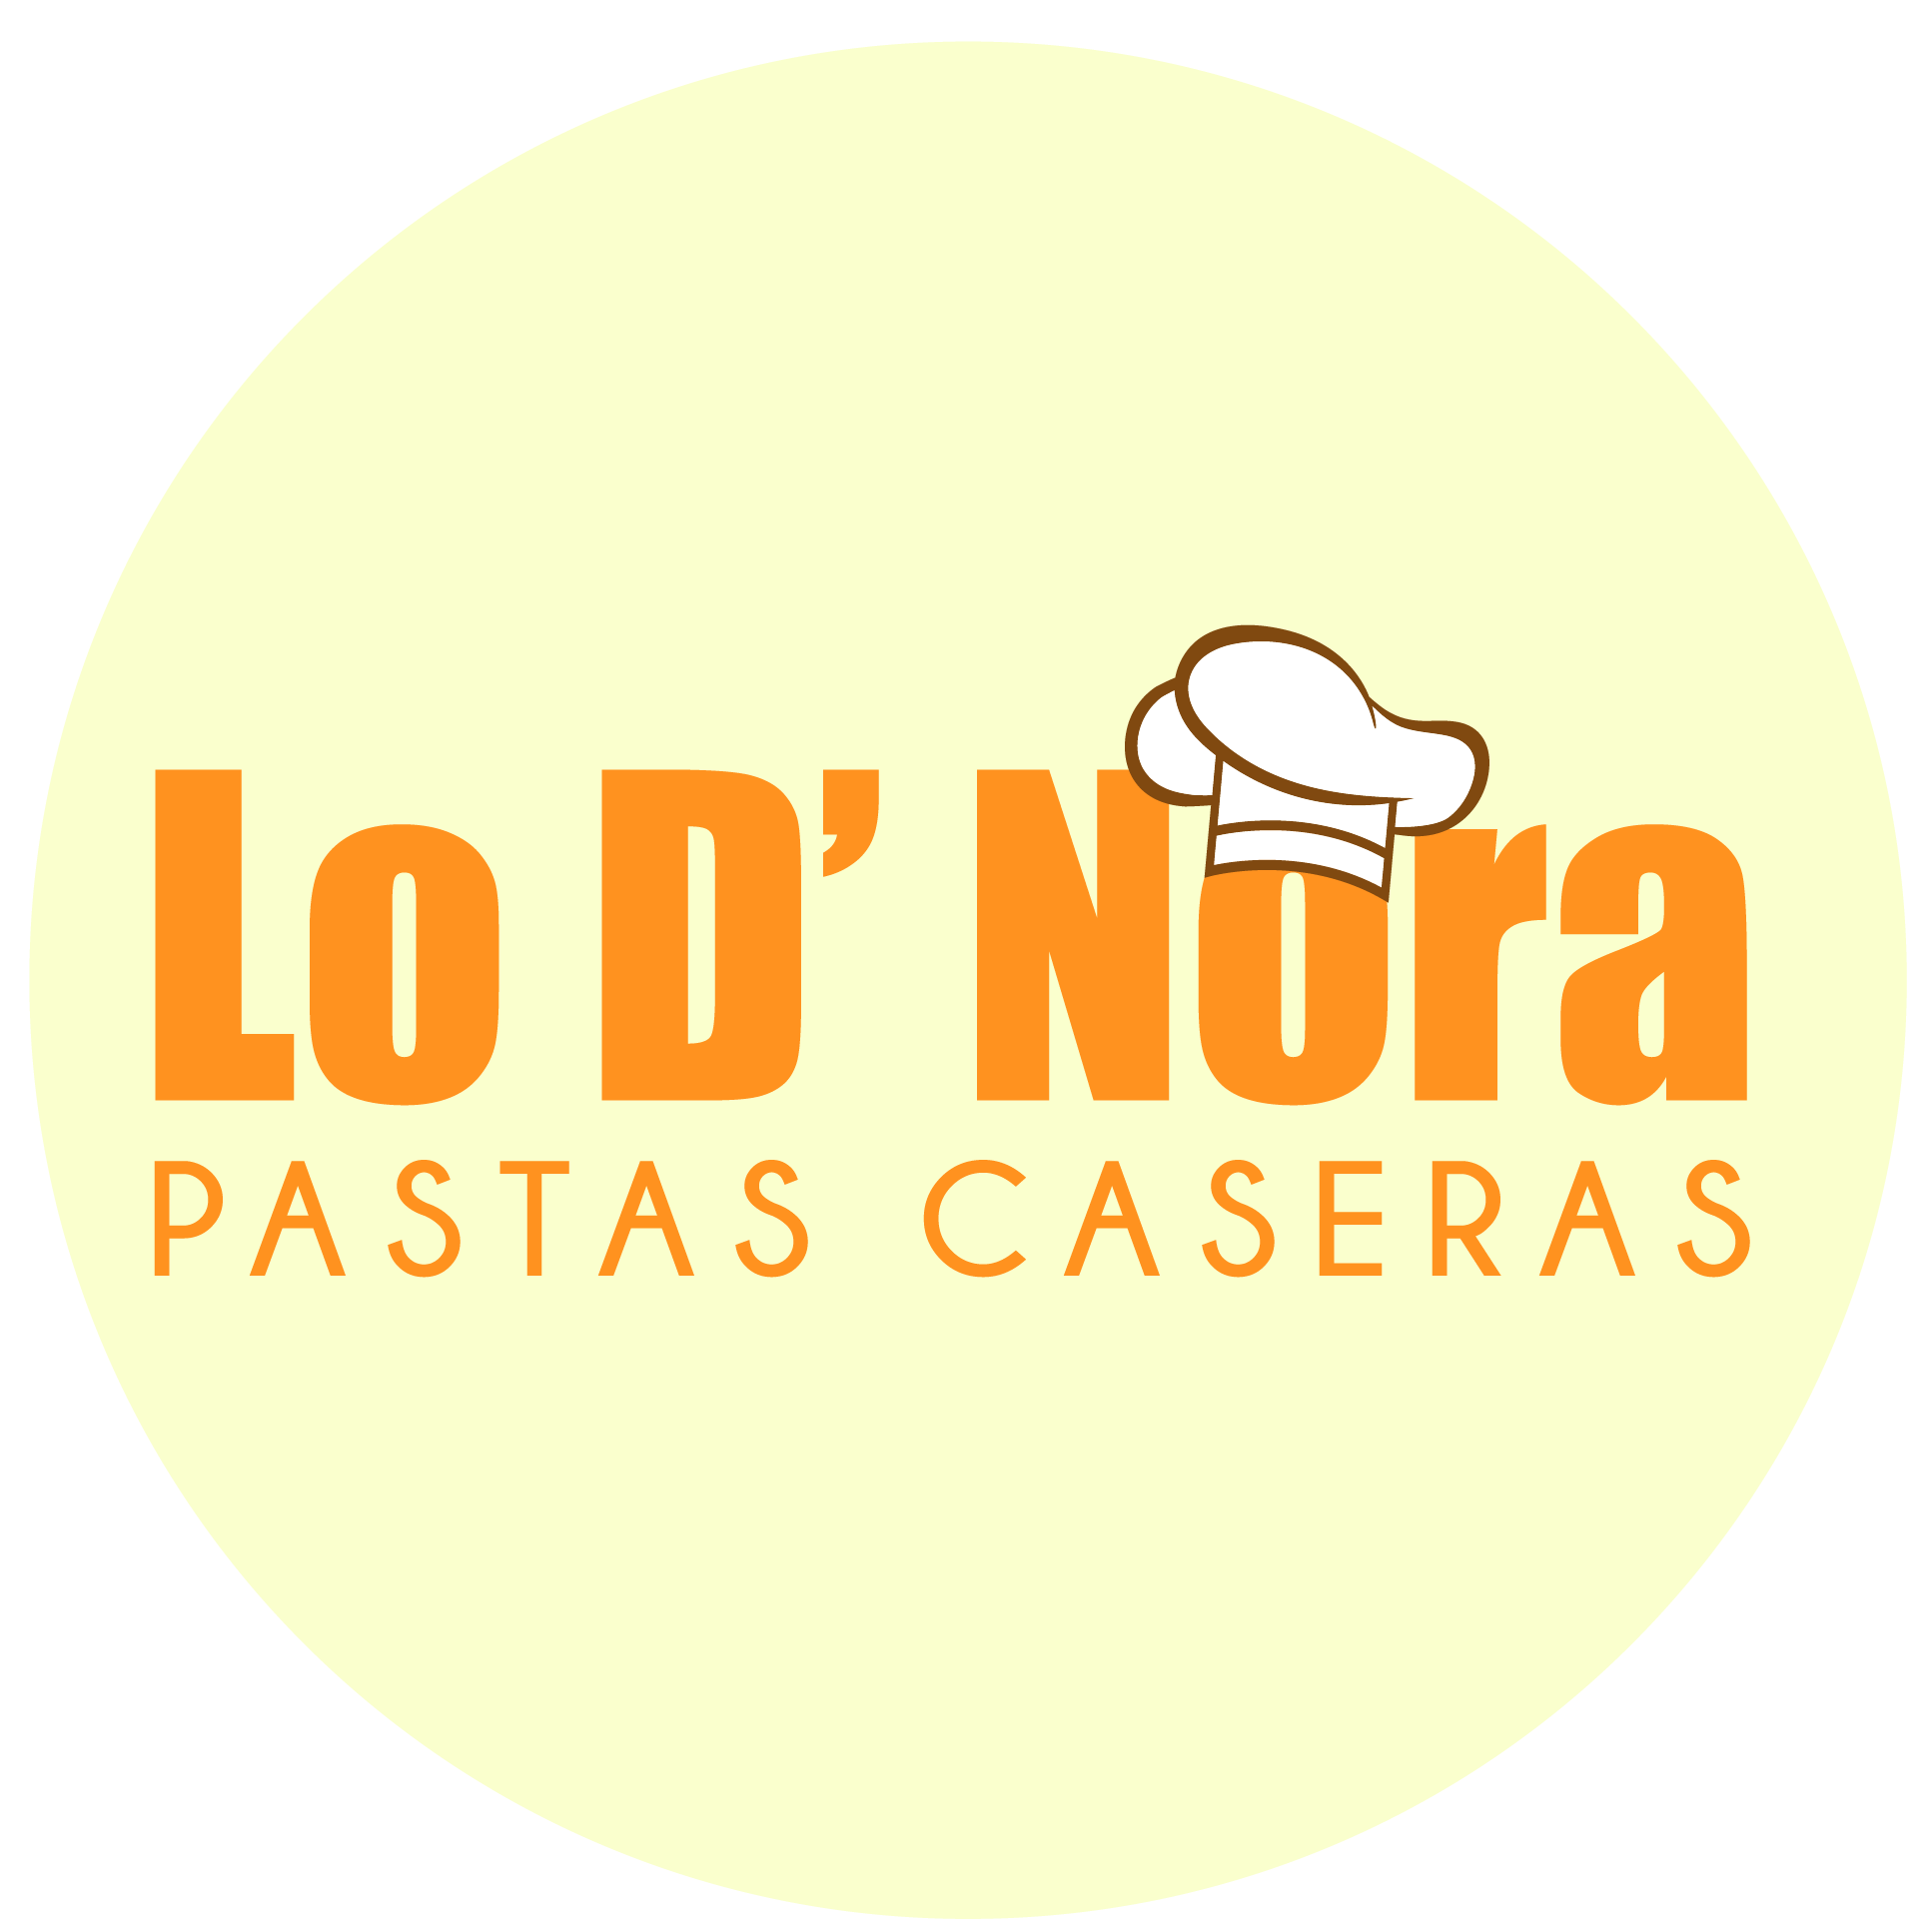 Lo D' Nora Pastas Caseras